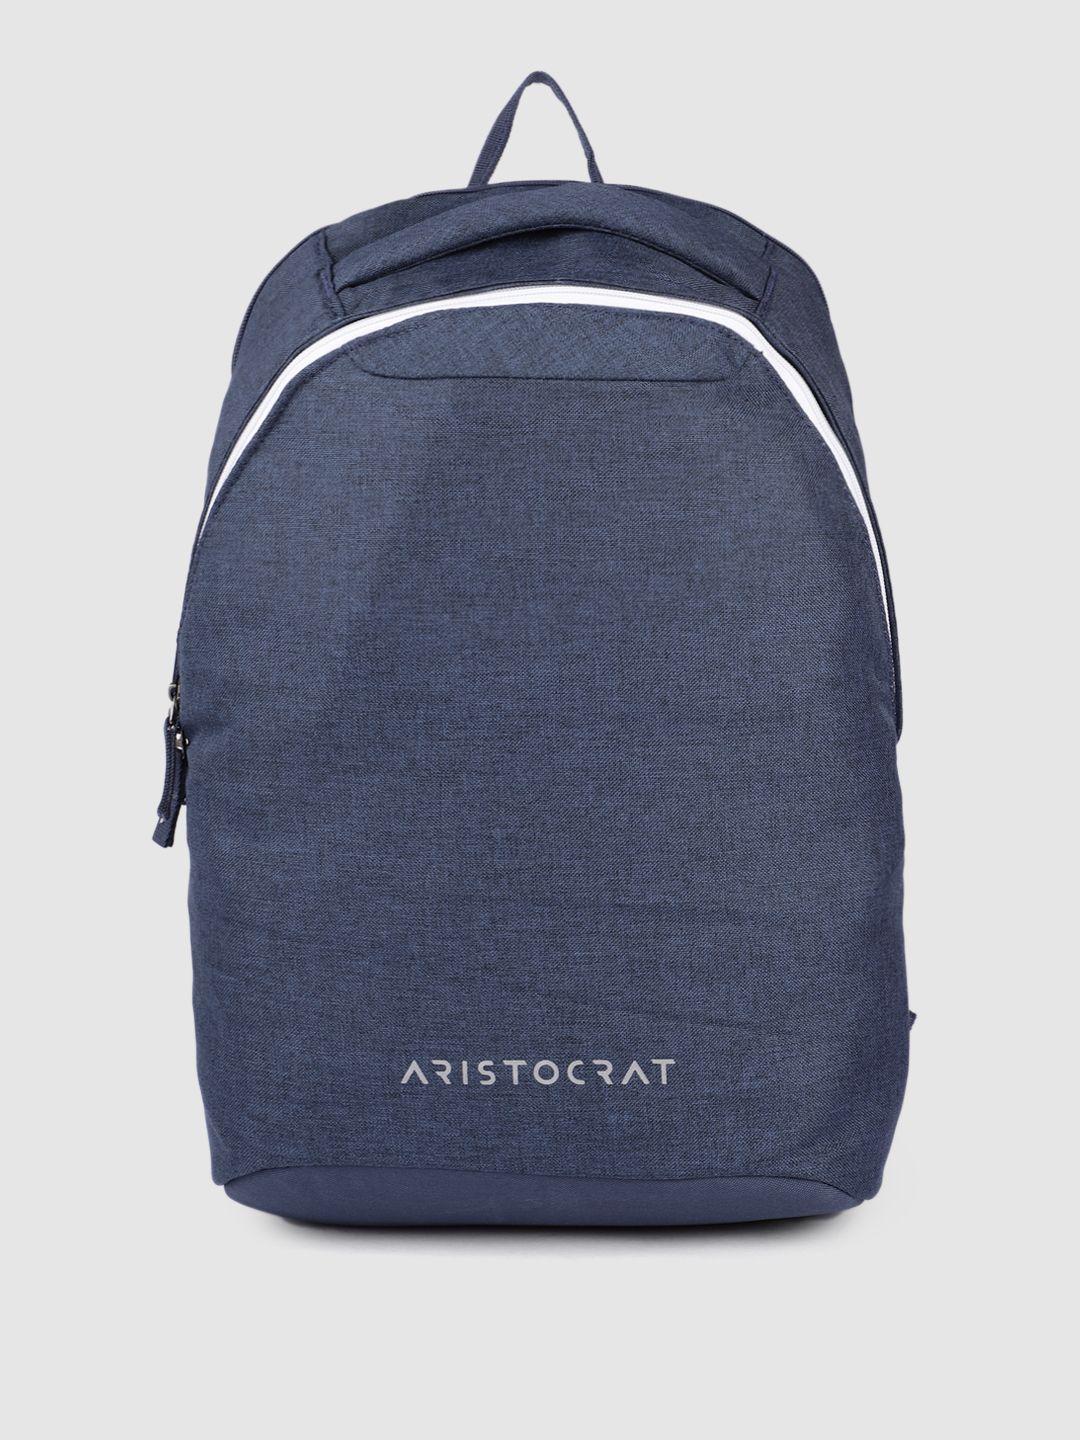 aristocrat unisex navy blue zeal laptop backpack